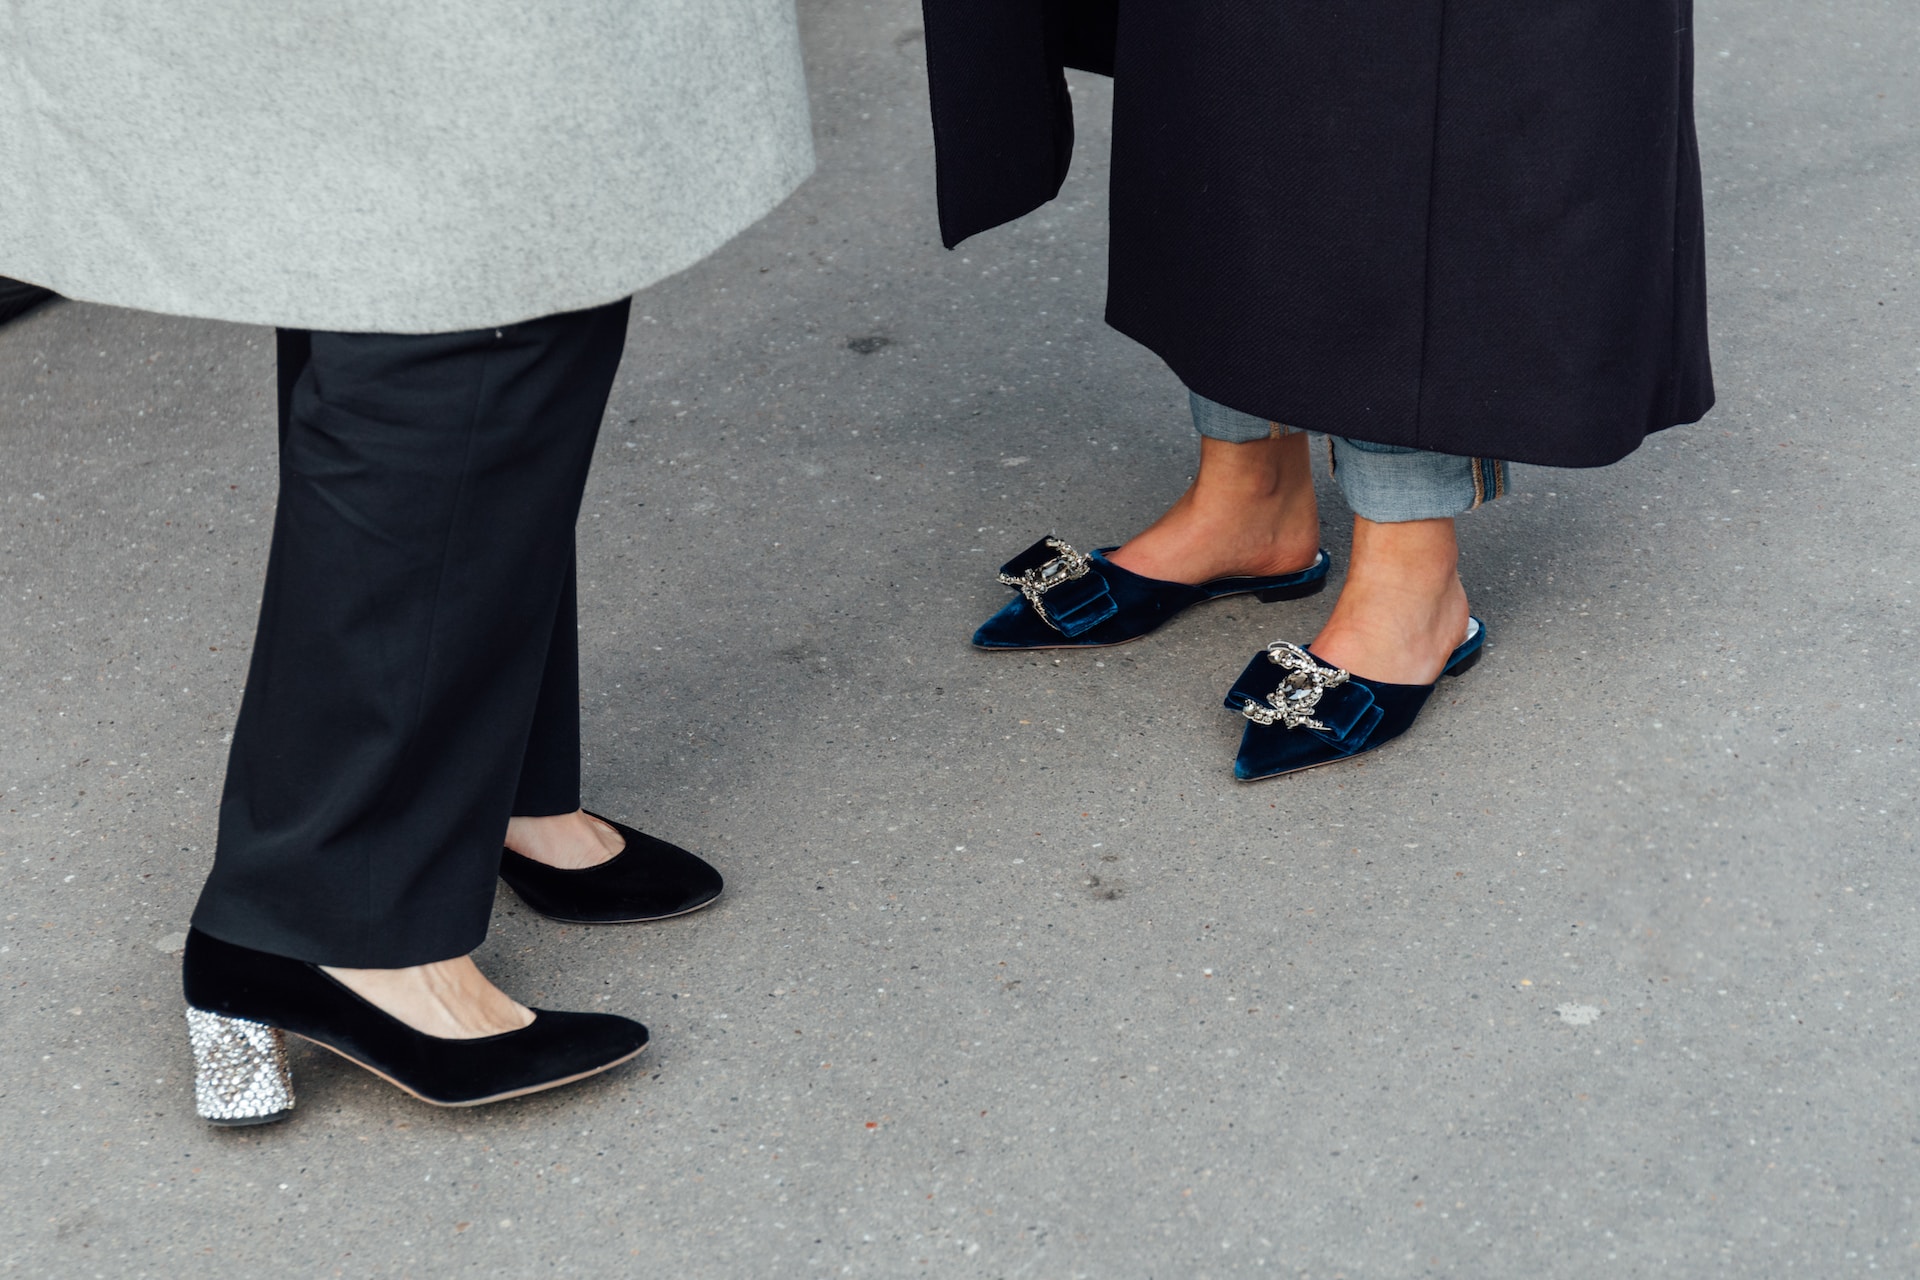 Jak prawidłowo mierzyć stopę i dobrać odpowiedni rozmiar obuwia: poradnik zakupowy